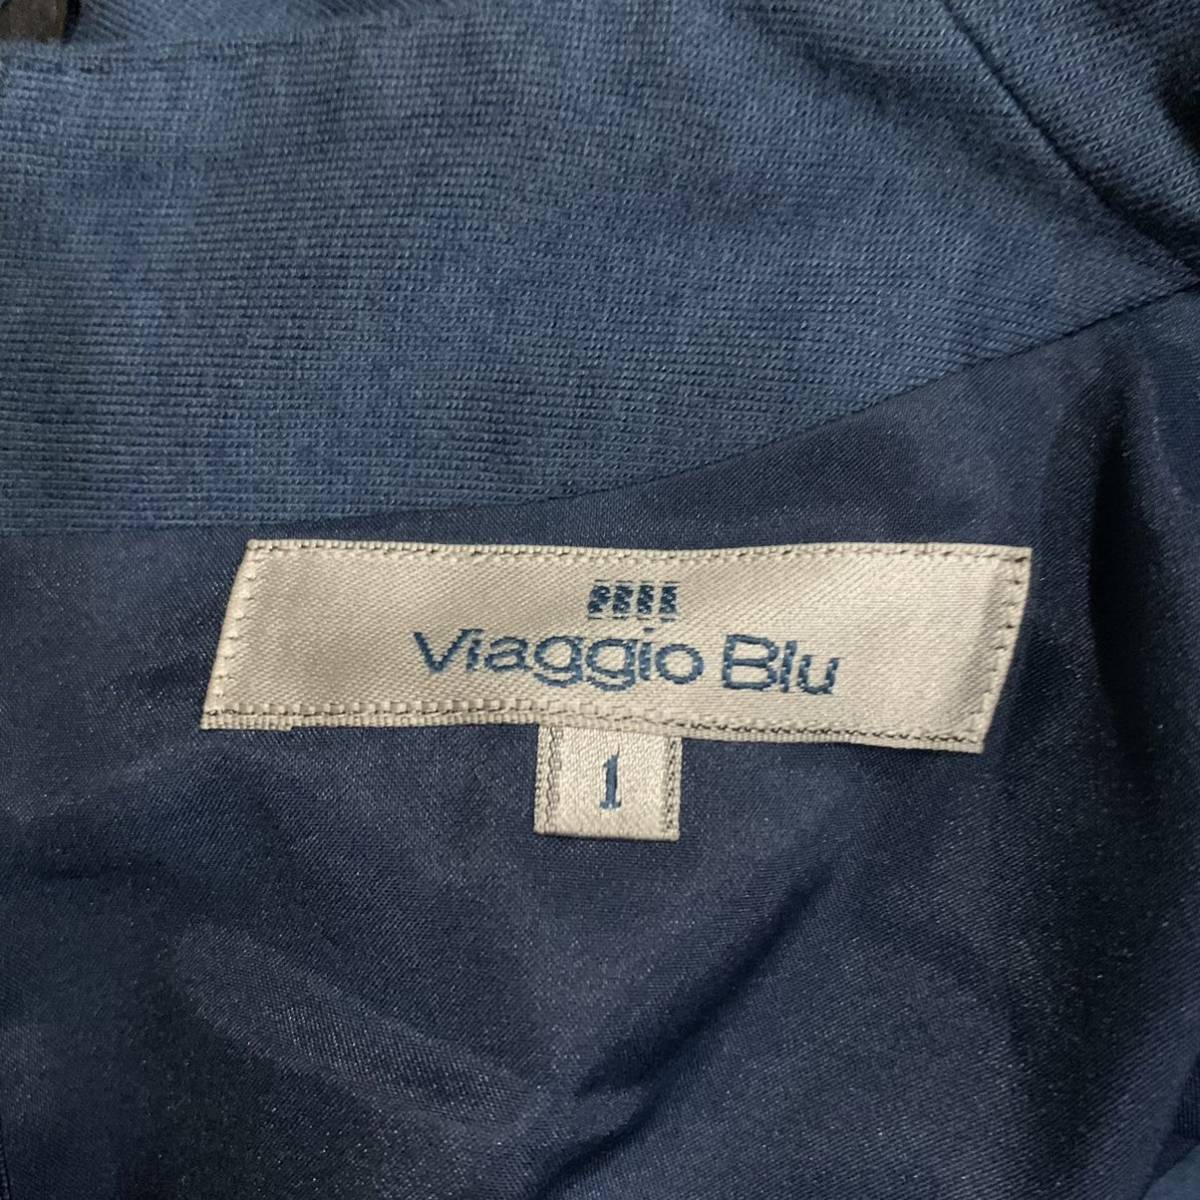 O V утонченный дизайн!! \' удобный выдающийся \' Viaggio Blu Viaggio Blu V шея 5 минут рукав стрейч шерсть туника One-piece size:1